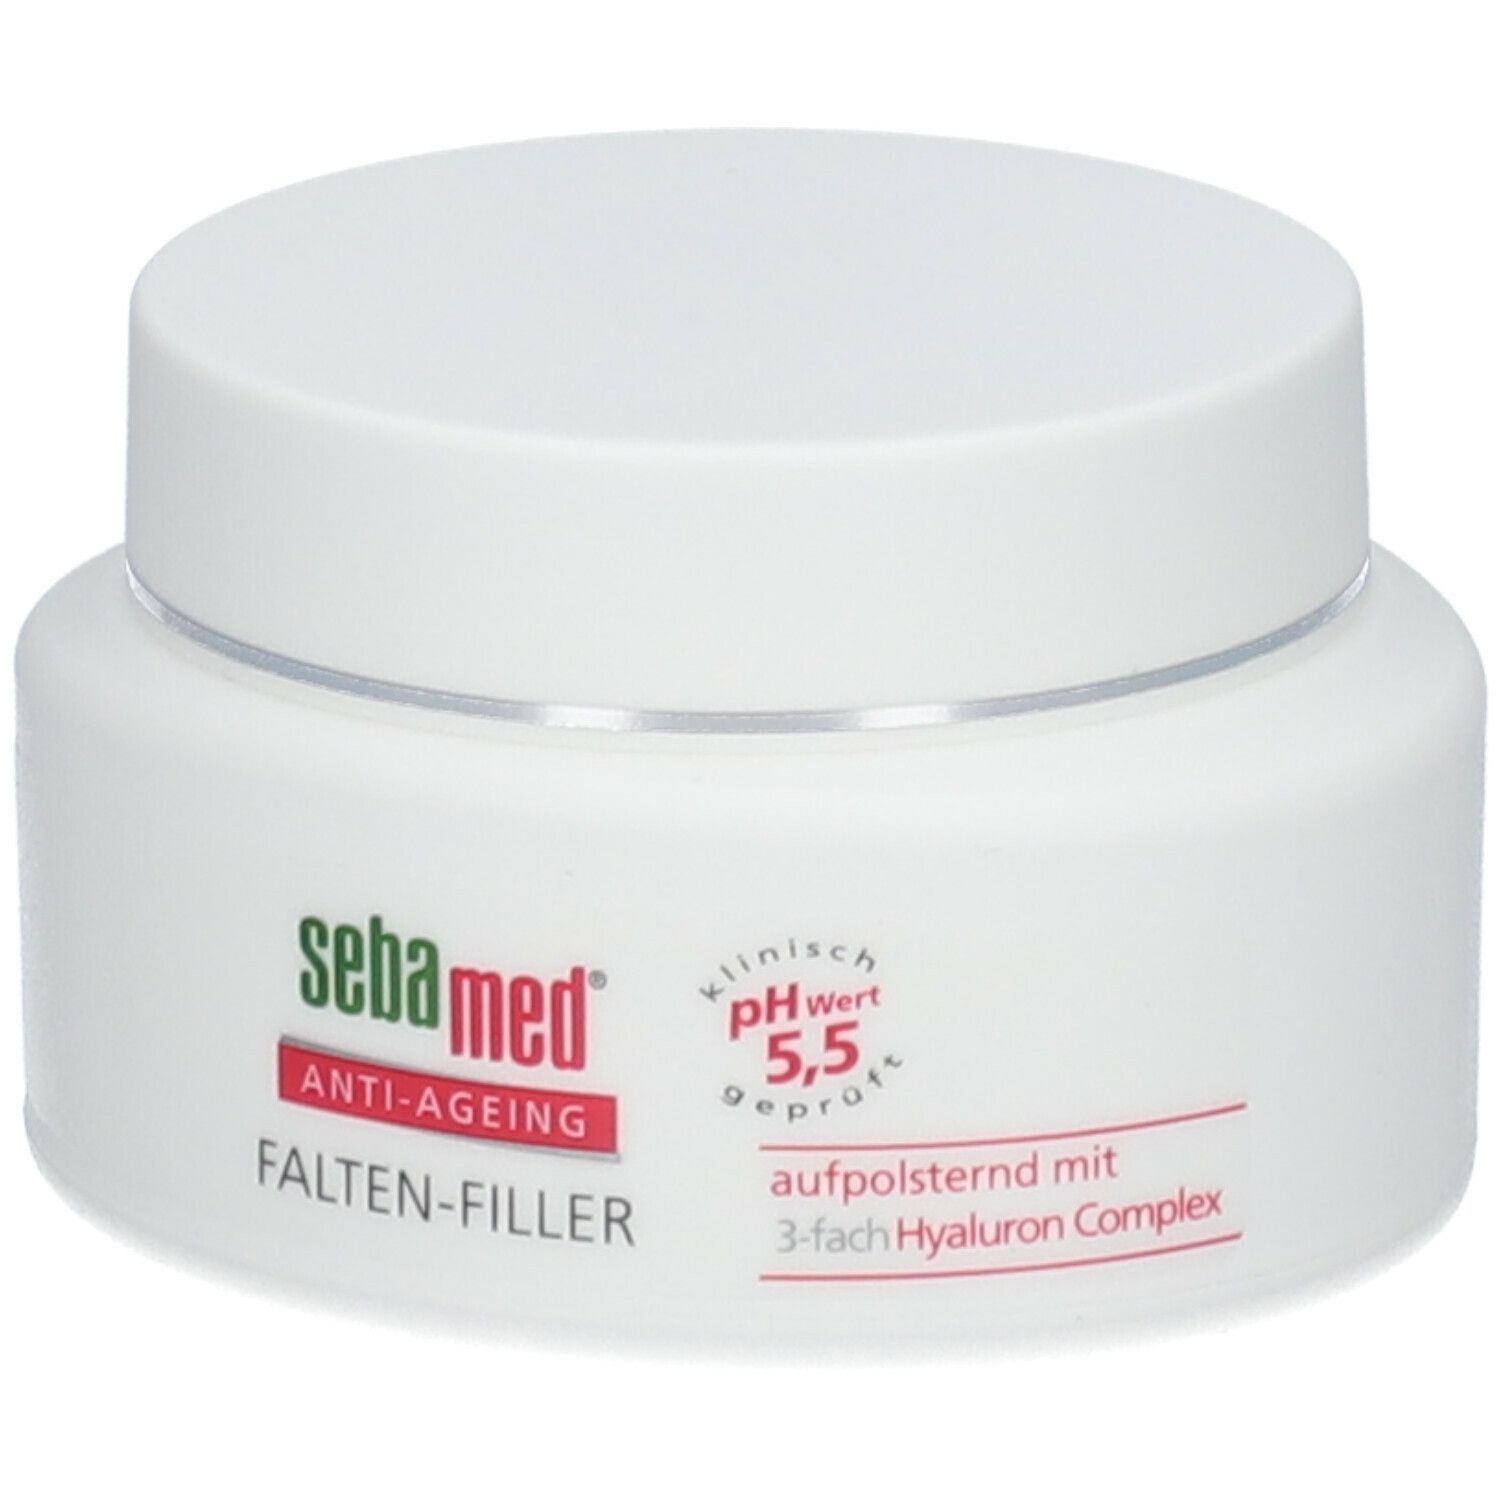 sebamed® Anti-Ageing Falten-Filler